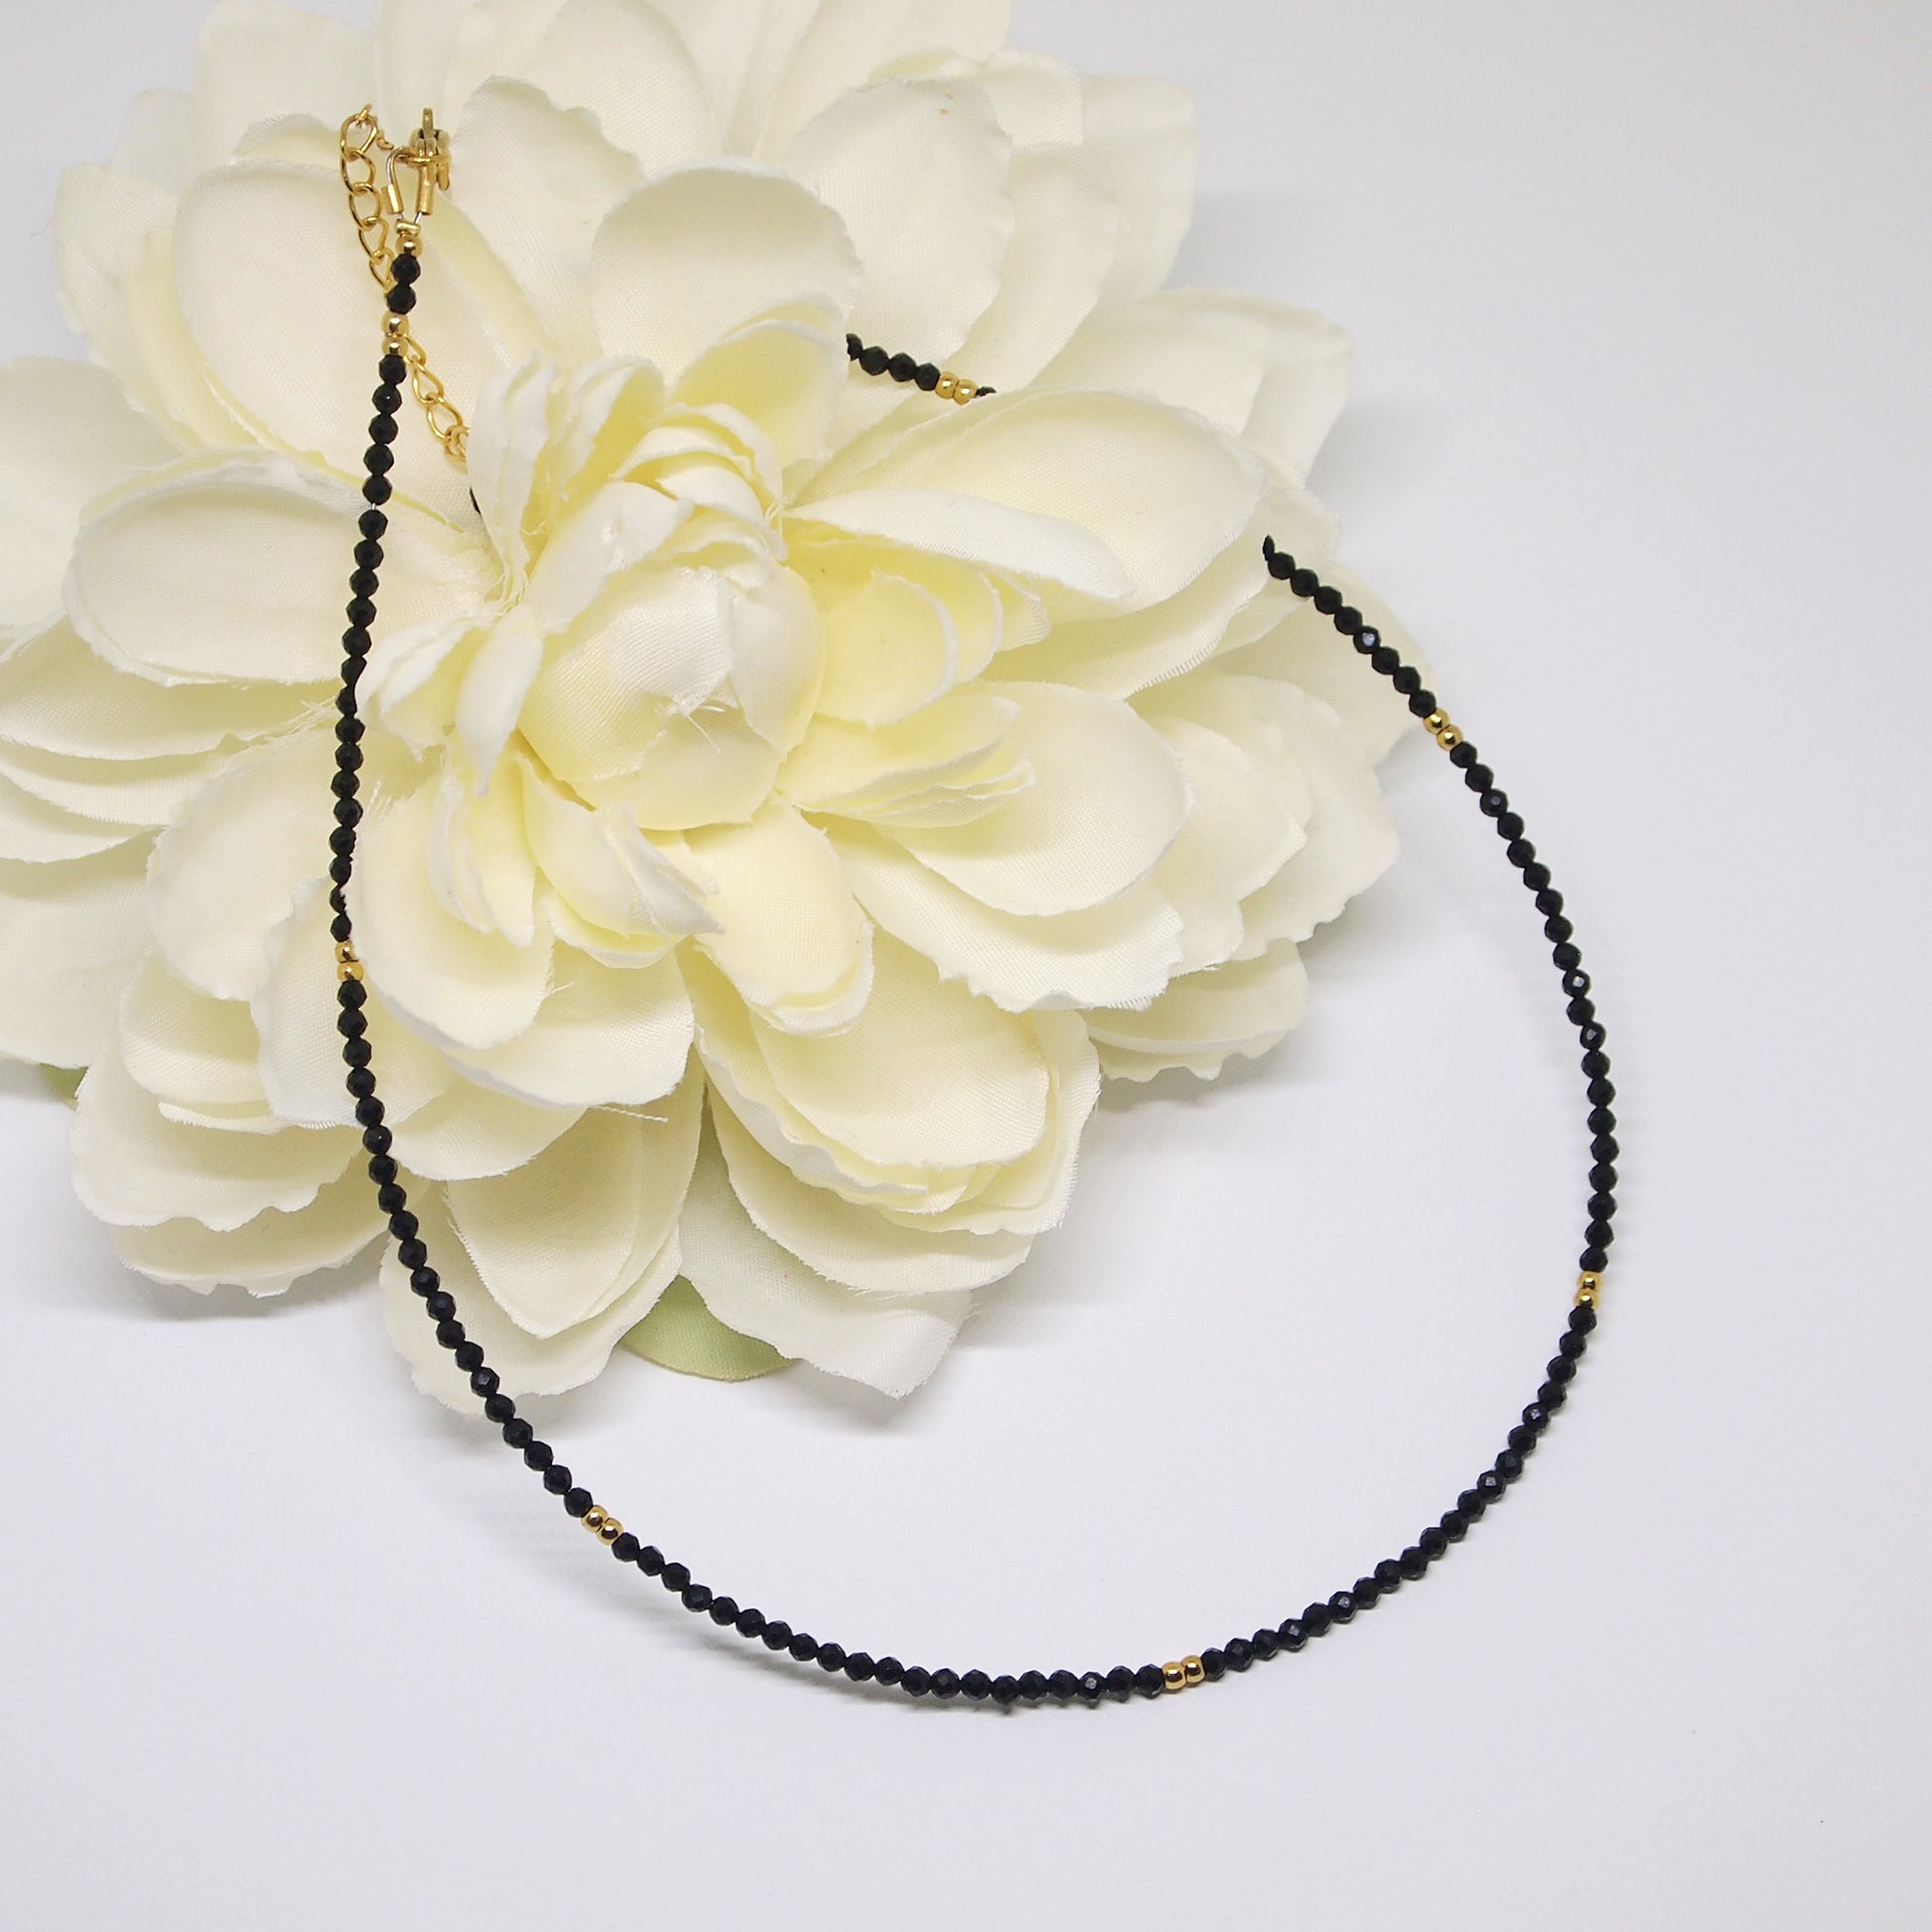 woman gemstone necklace, black tourmaline jewelry